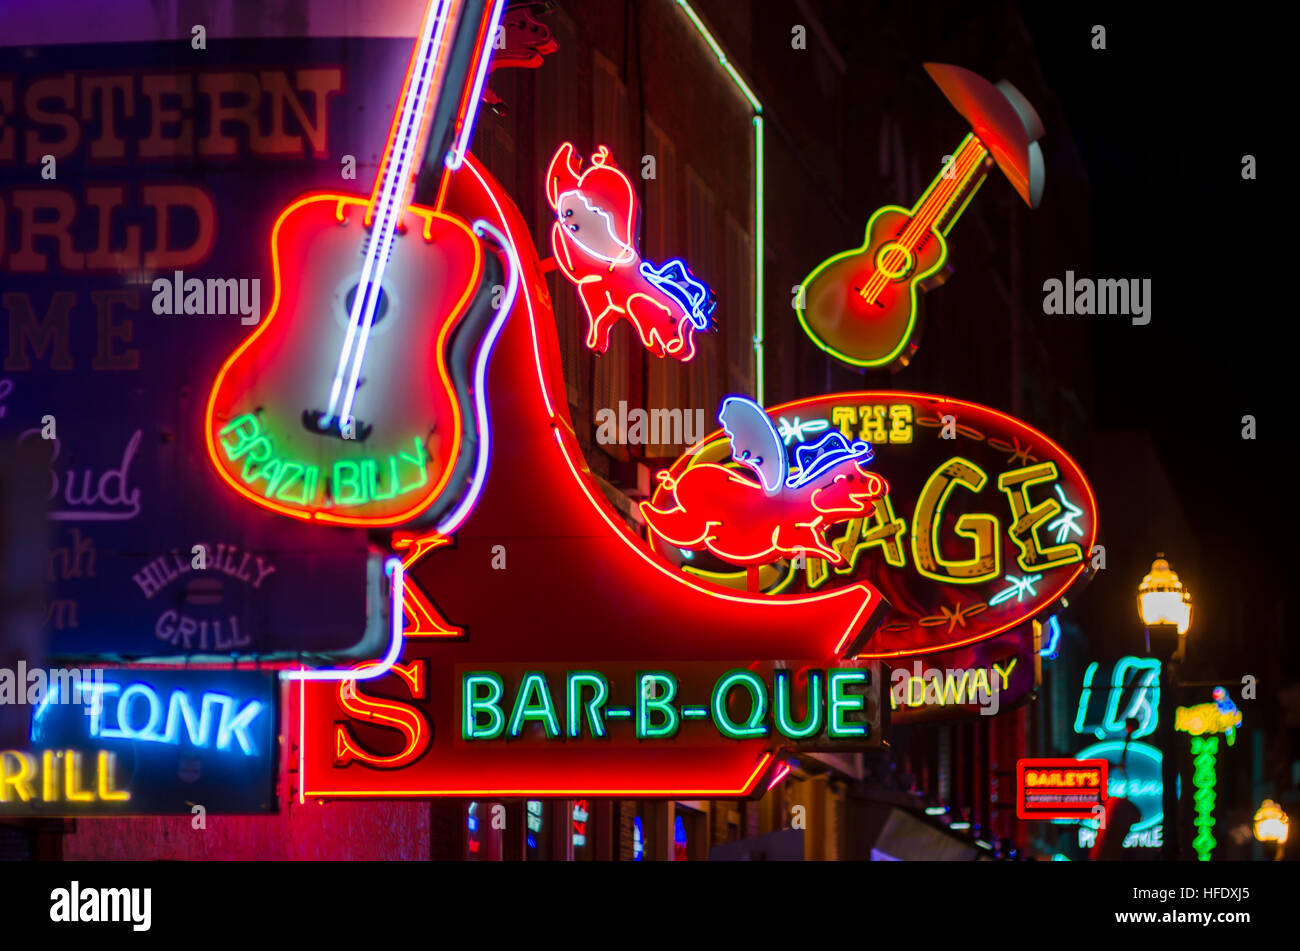 NASHVILLE - 10. Juli 2014: Helles Neon-Schilder von der Stadt Honky Tonk bar Szene Linie der Broadway Entertainment District. Stockfoto